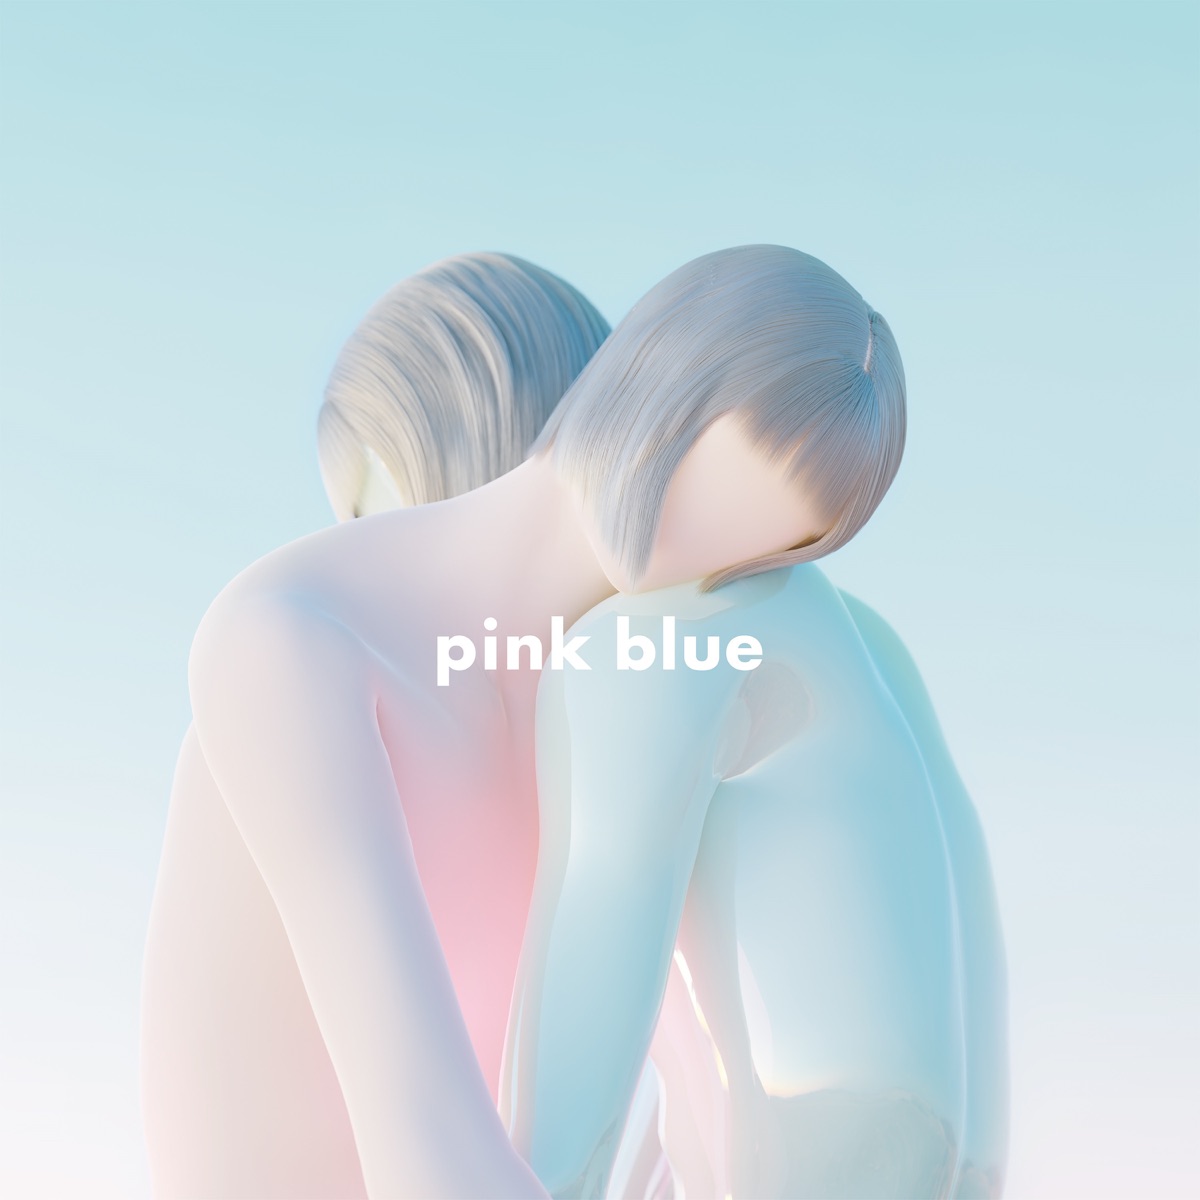 『緑黄色社会 - ピンクブルー』収録の『pink blue』ジャケット